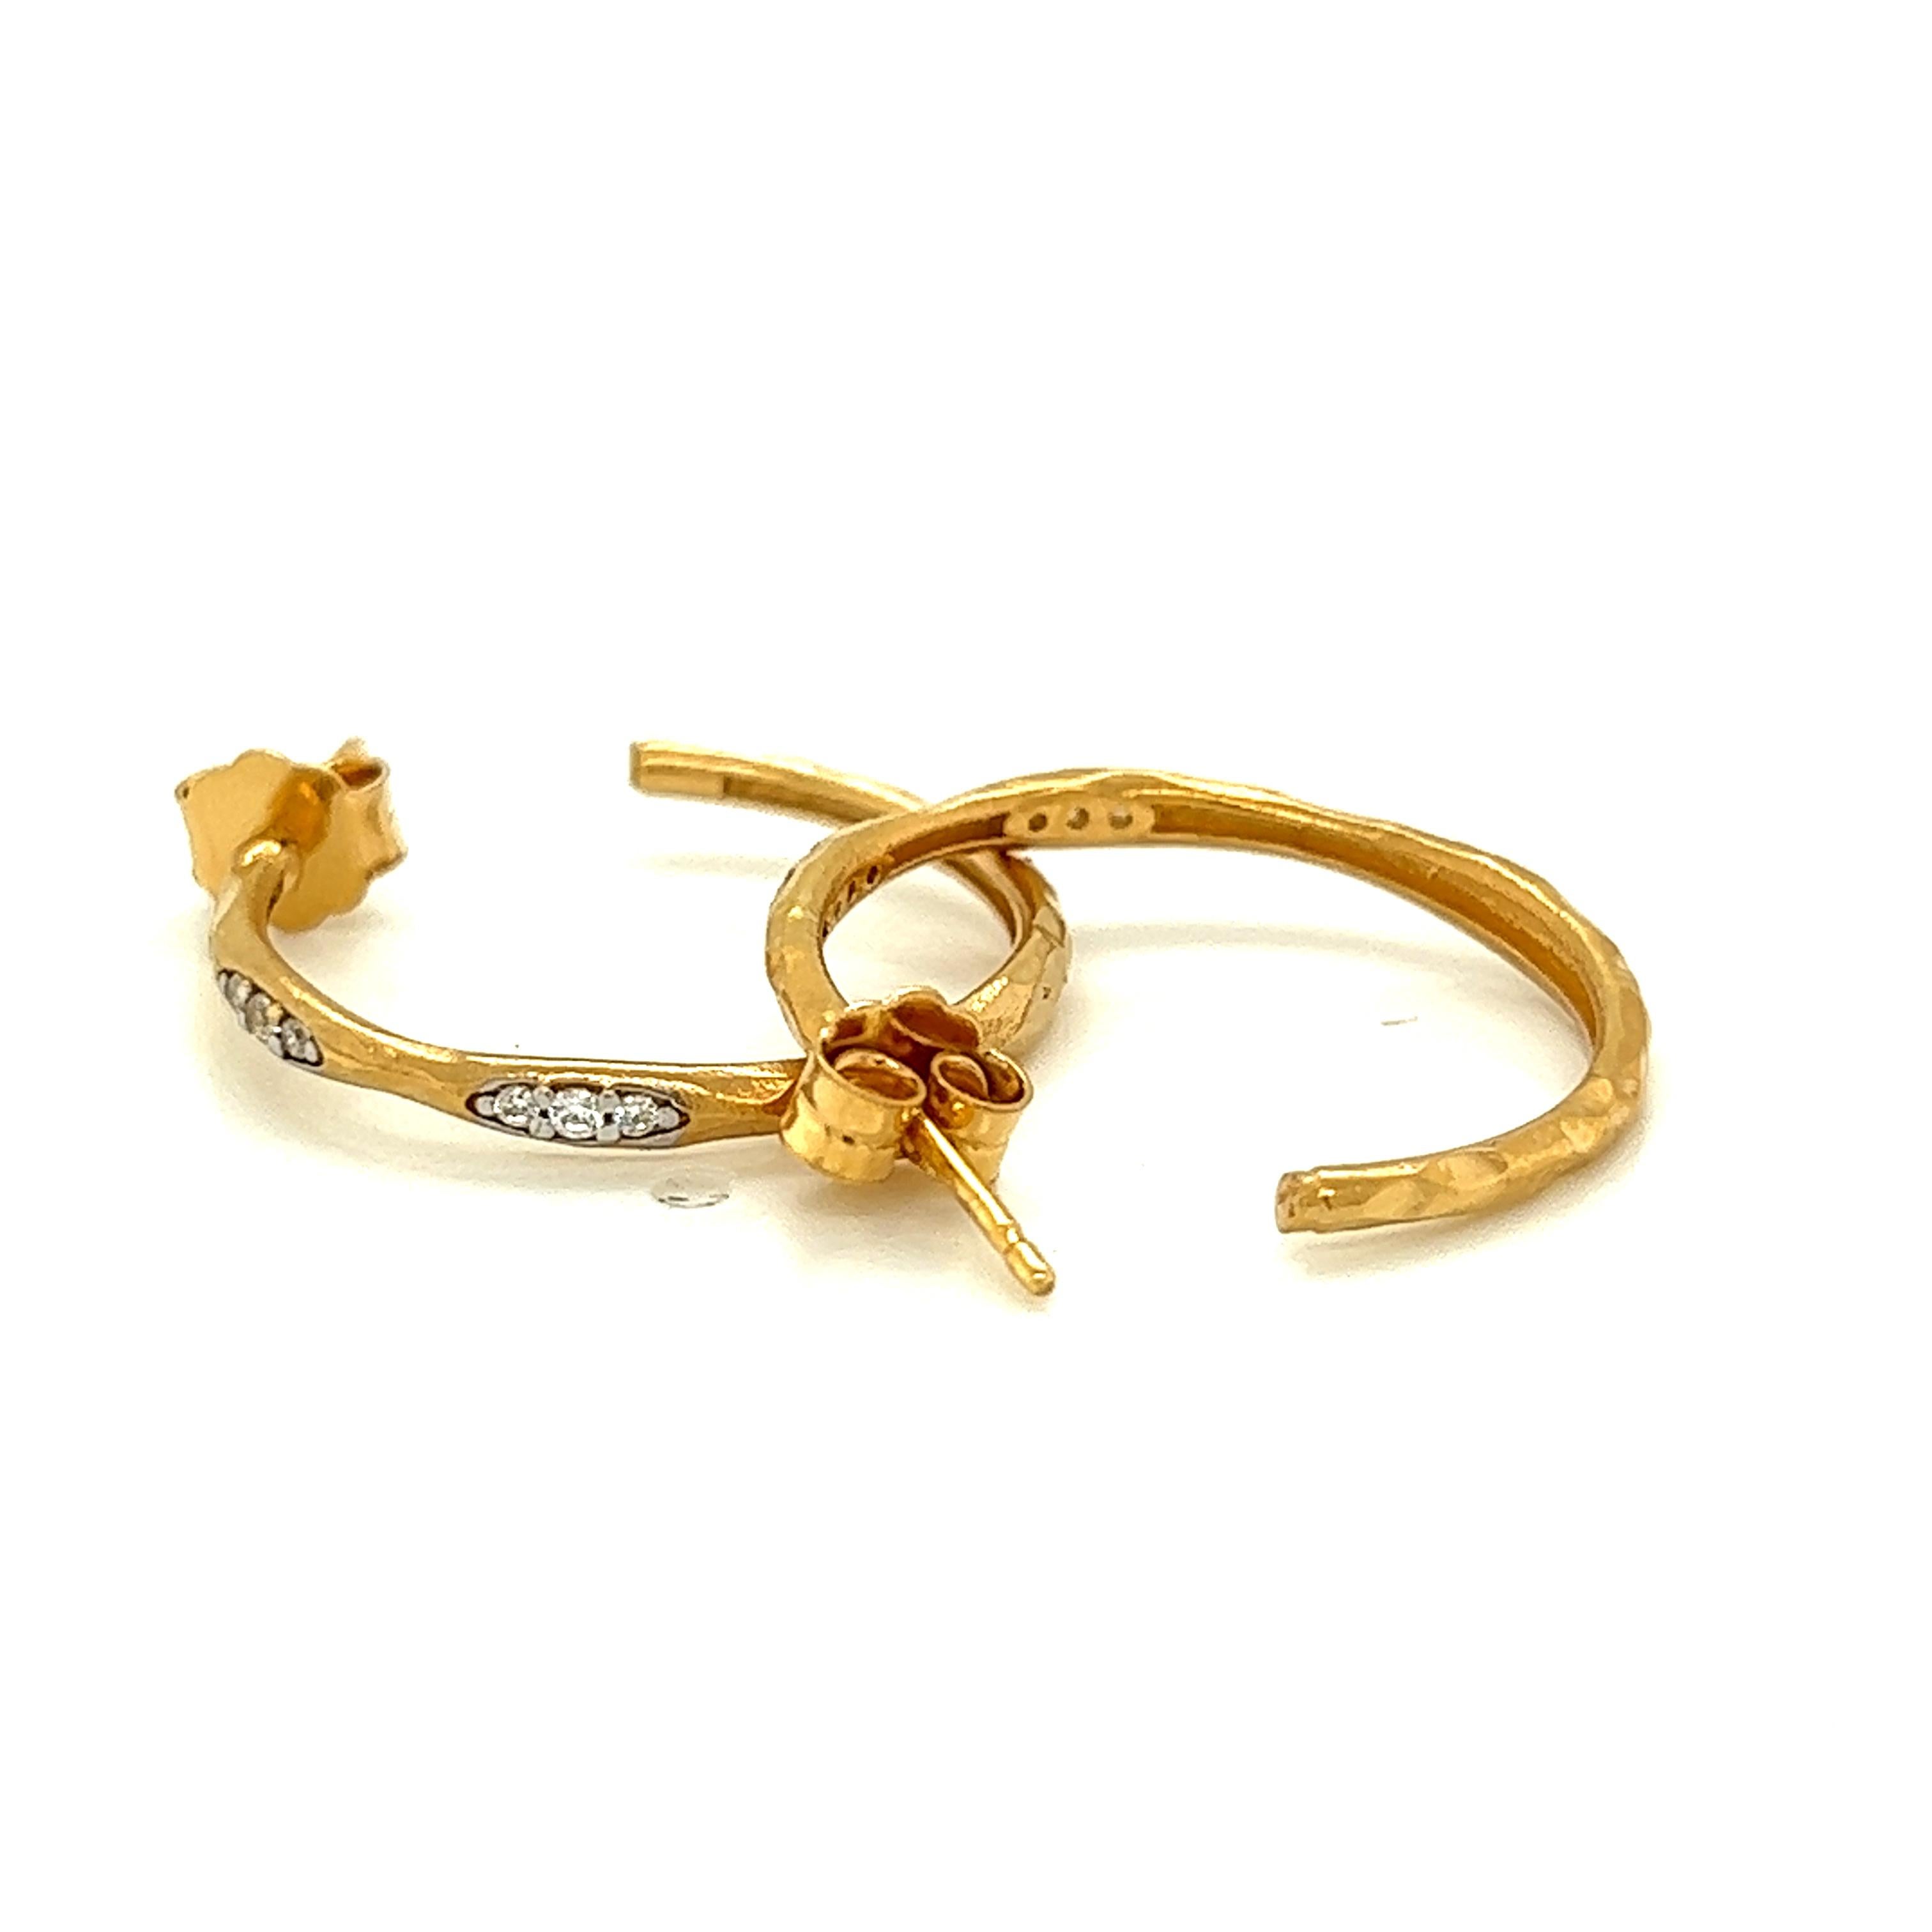 boucles d'oreilles en or jaune 14 carats fabriquées à la main, mattes et finies au marteau, avec des diamants de 0,10 carat et une fermeture de sécurité.
